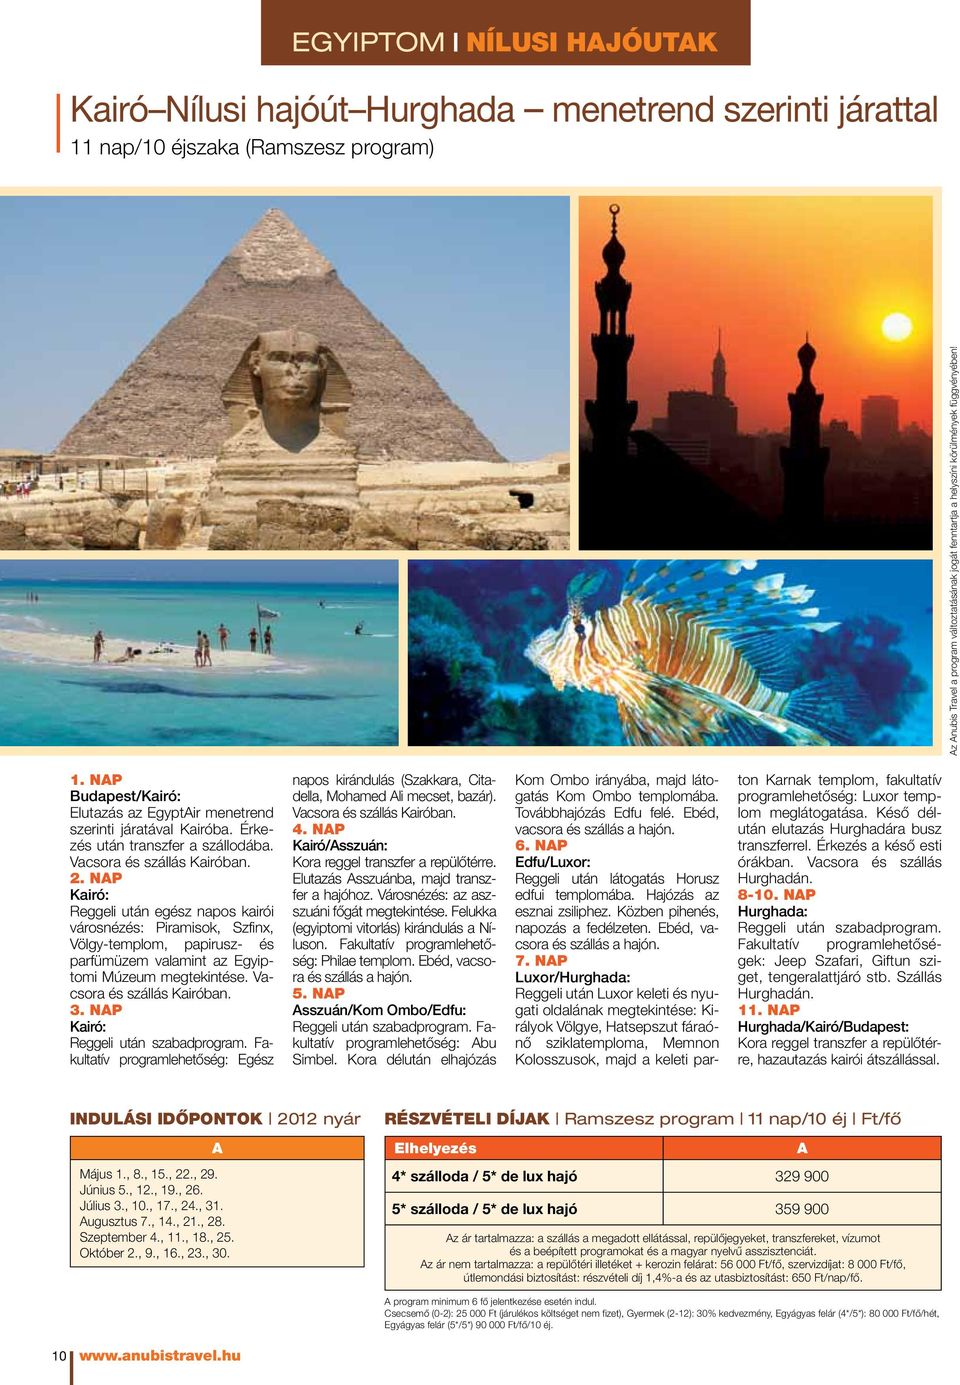 nap Kairó: Reggeli után egész napos kairói városnézés: Piramisok, Szfinx, Völgy-templom, papirusz- és parfümüzem valamint az Egyiptomi Múzeum megtekintése. Vacsora és szállás Kairóban. 3.